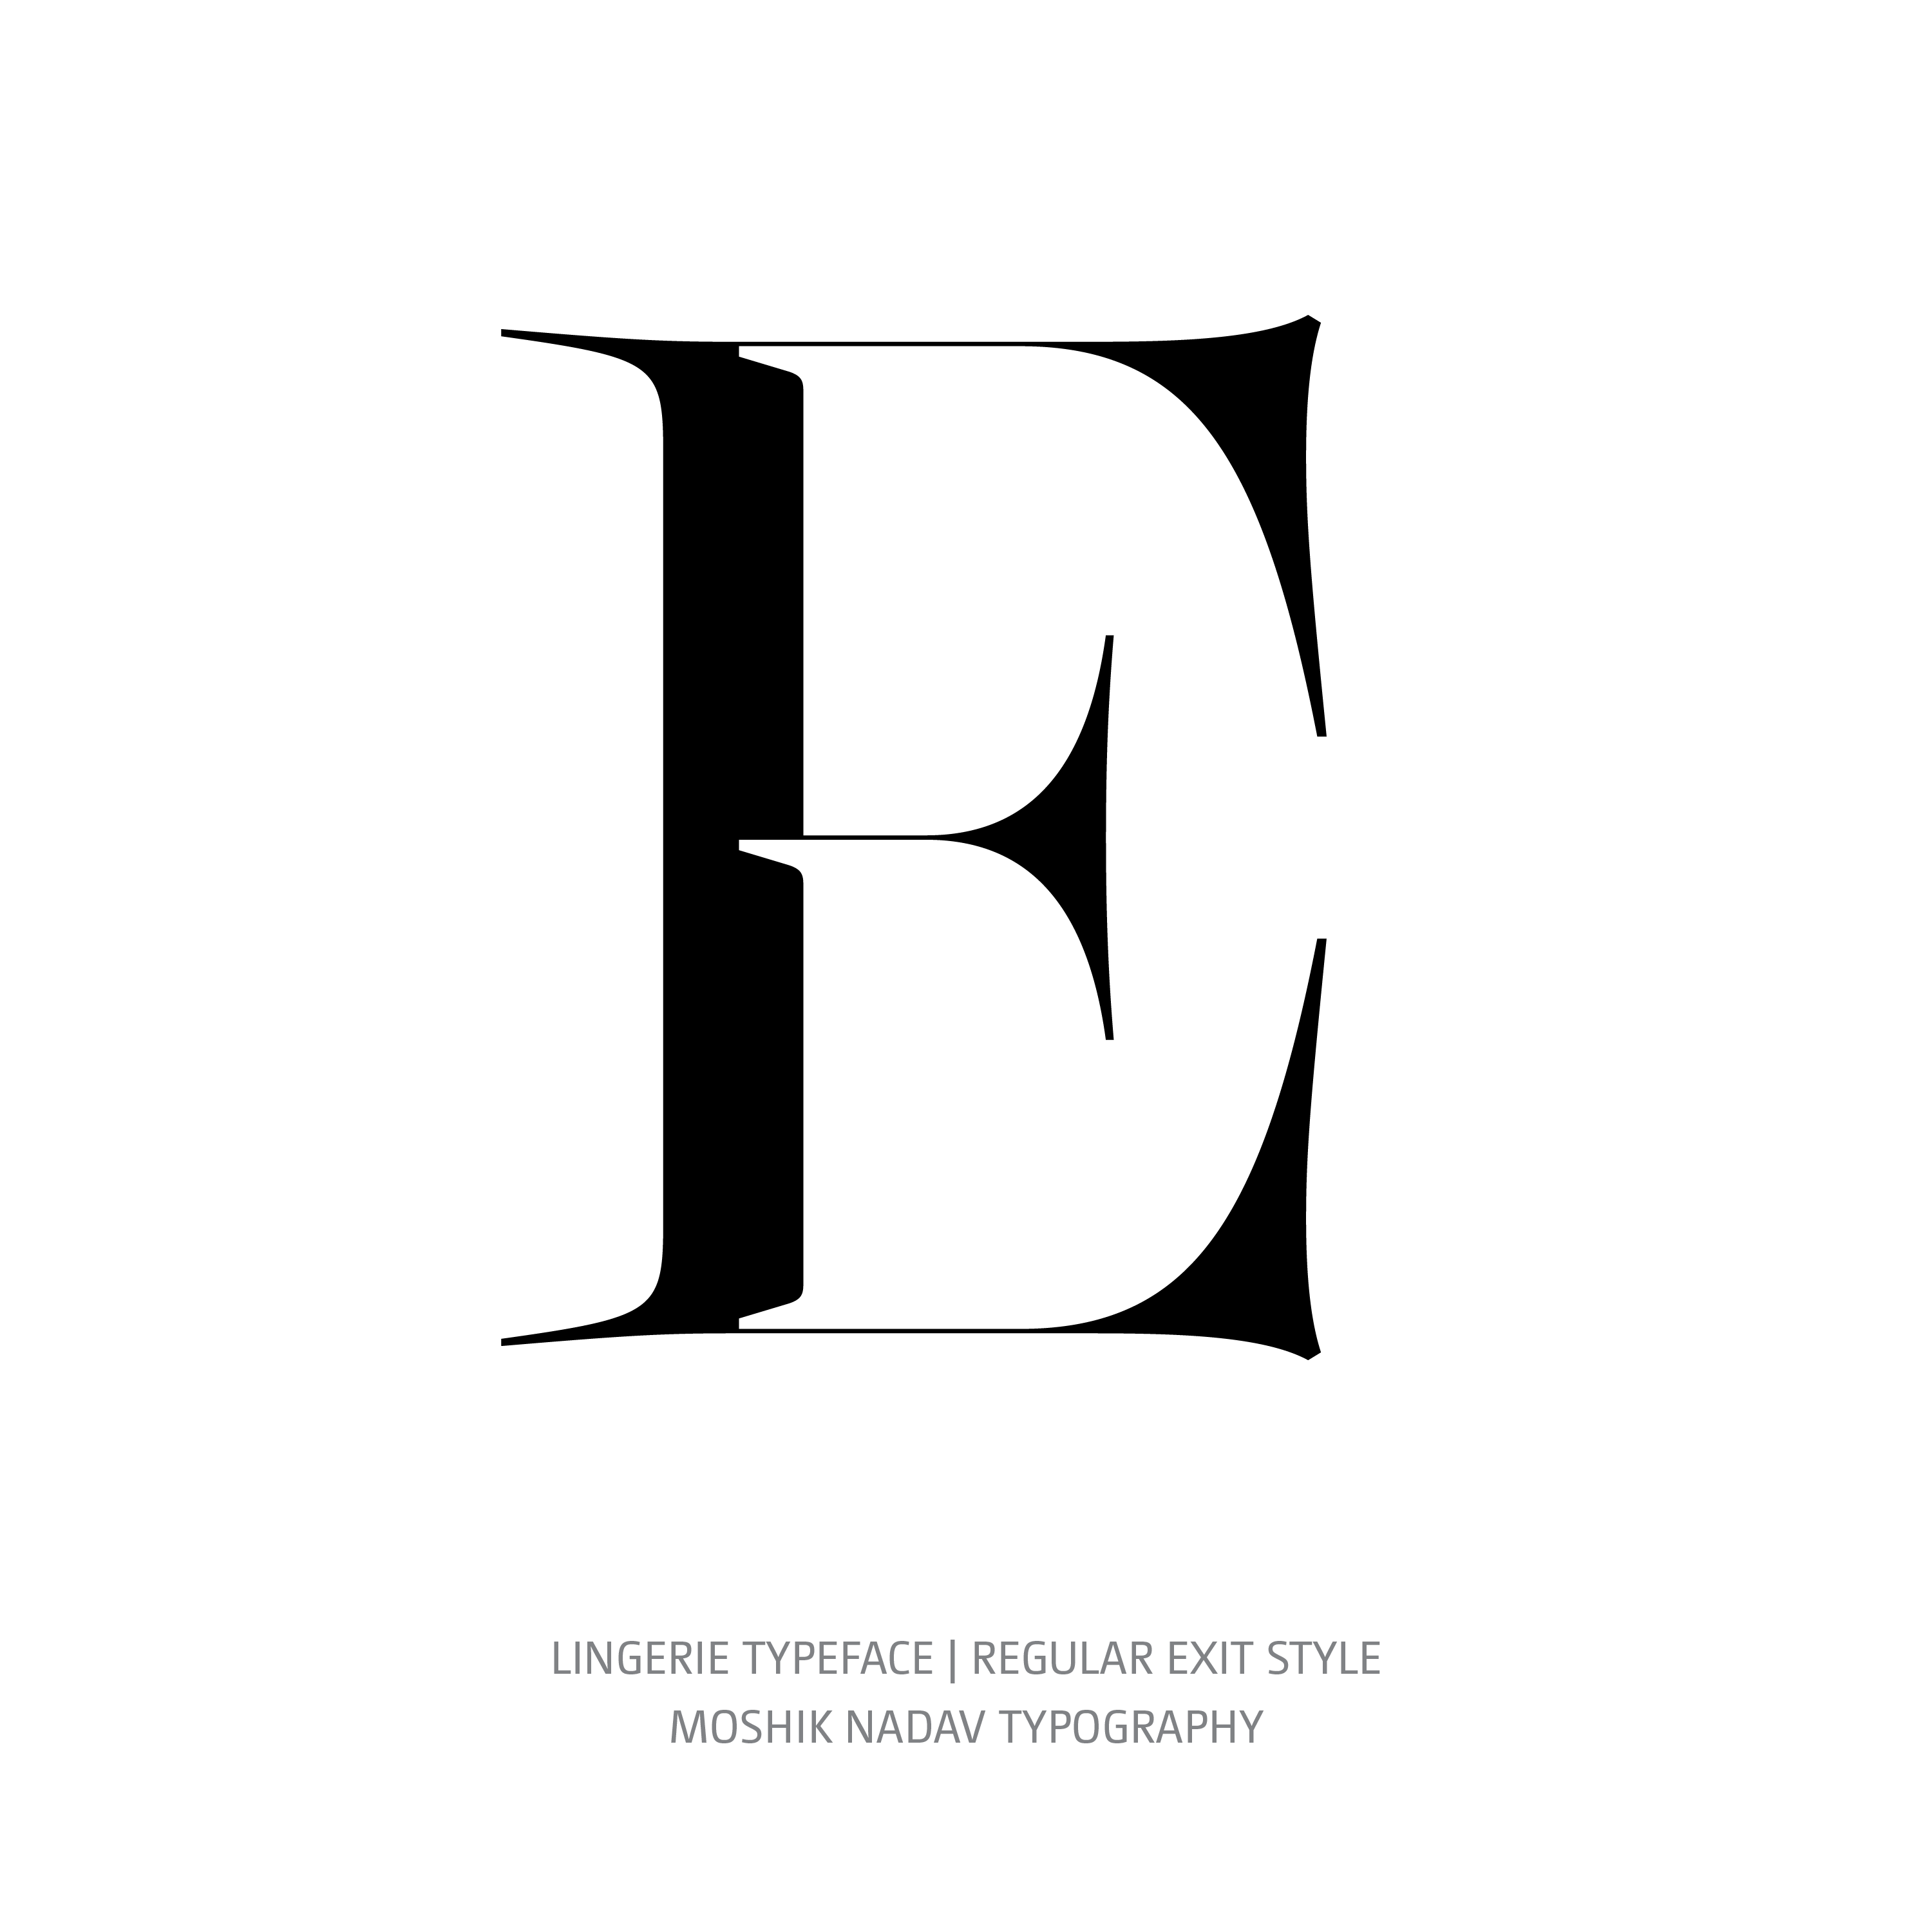 Lingerie Typeface Regular Exit E